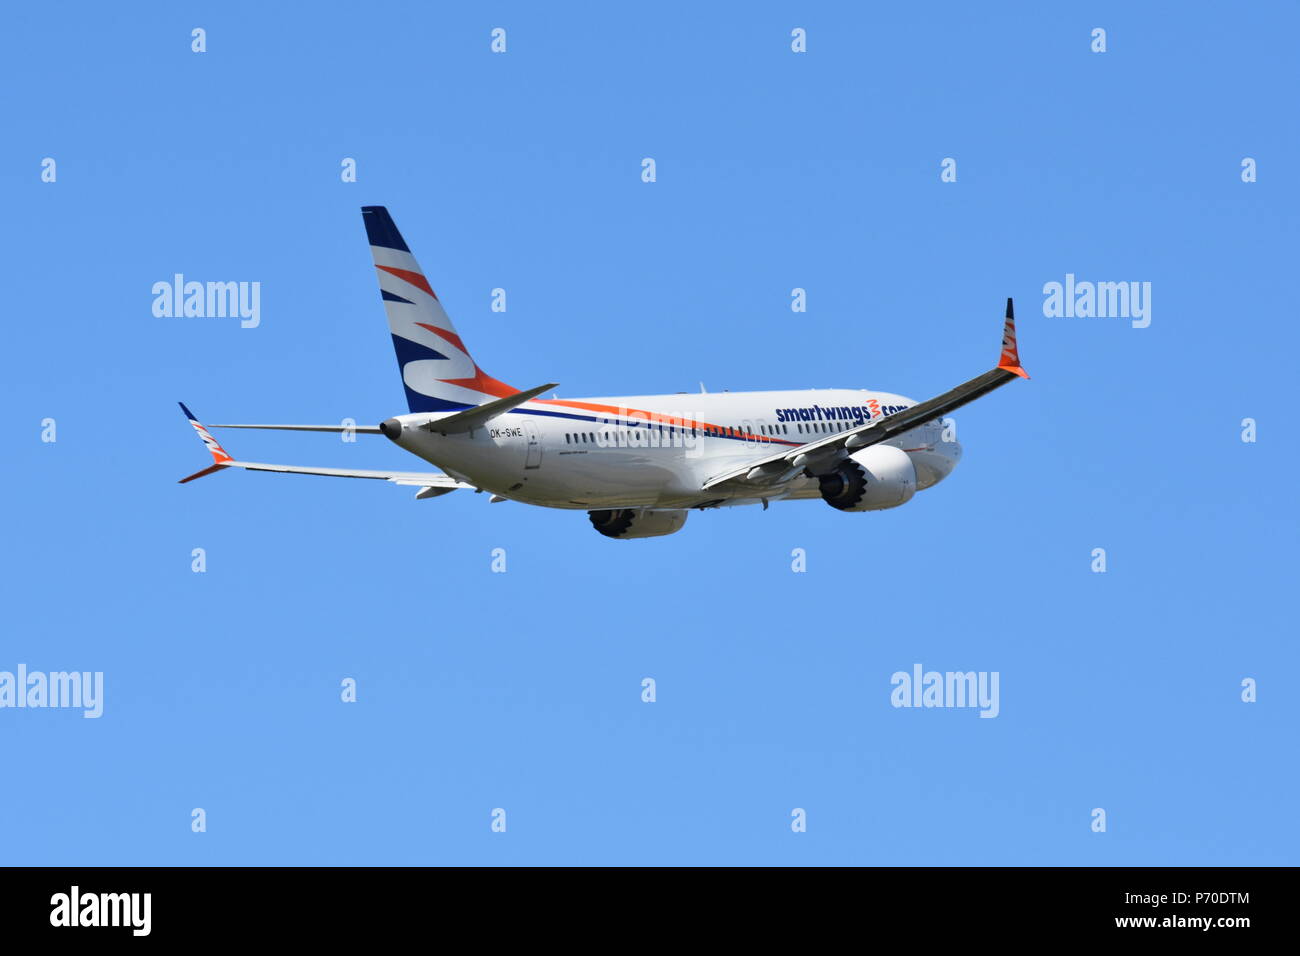 Smartwings immagini e fotografie stock ad alta risoluzione - Alamy